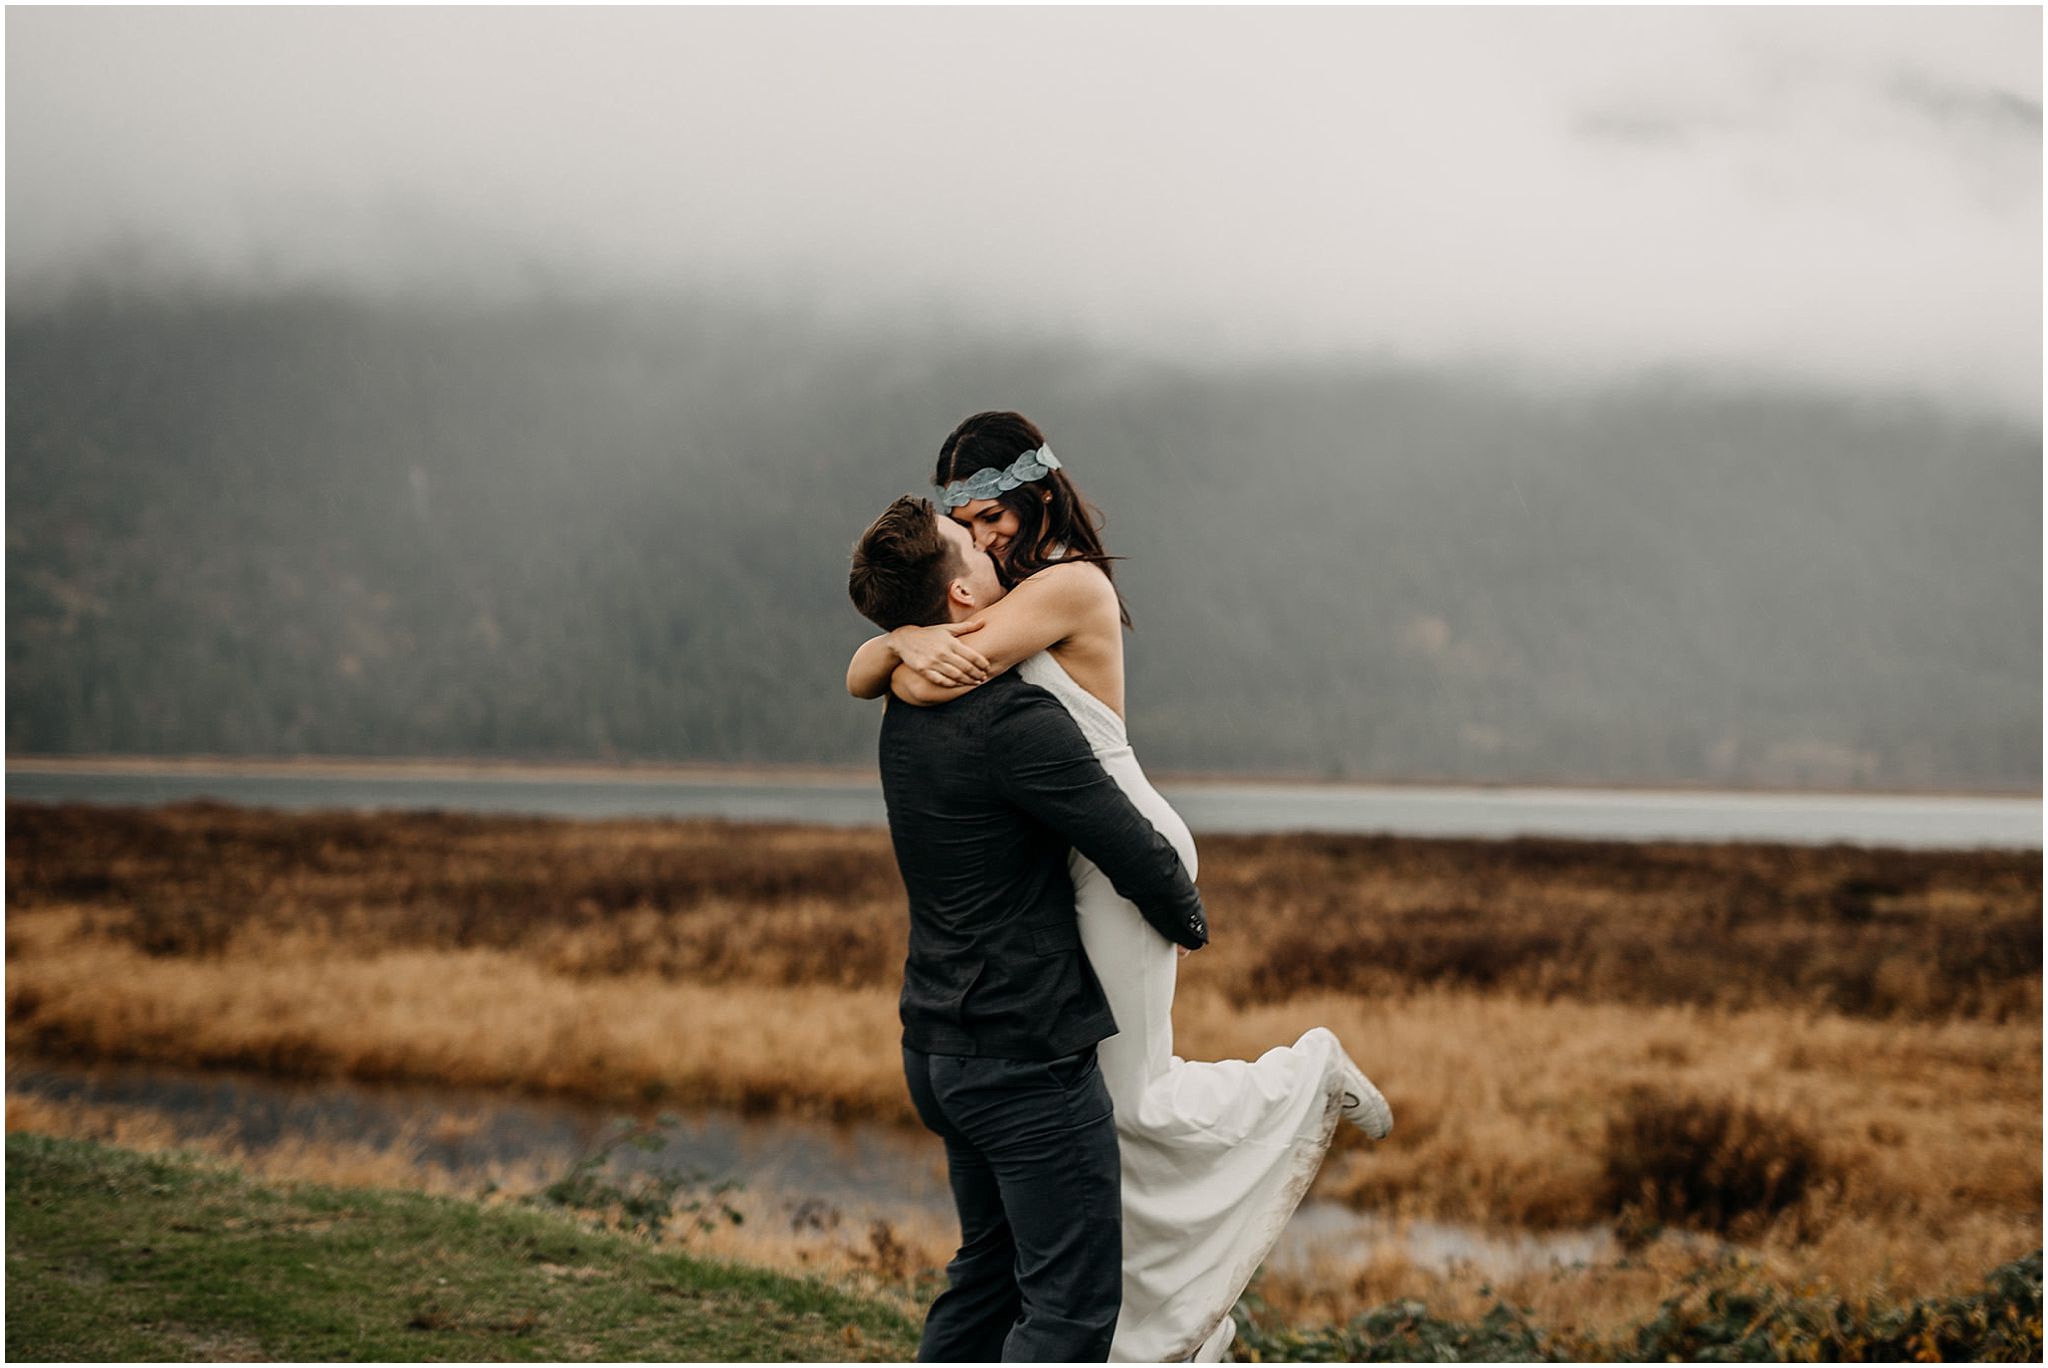 groom lifting bride pitt lake foggy portraits